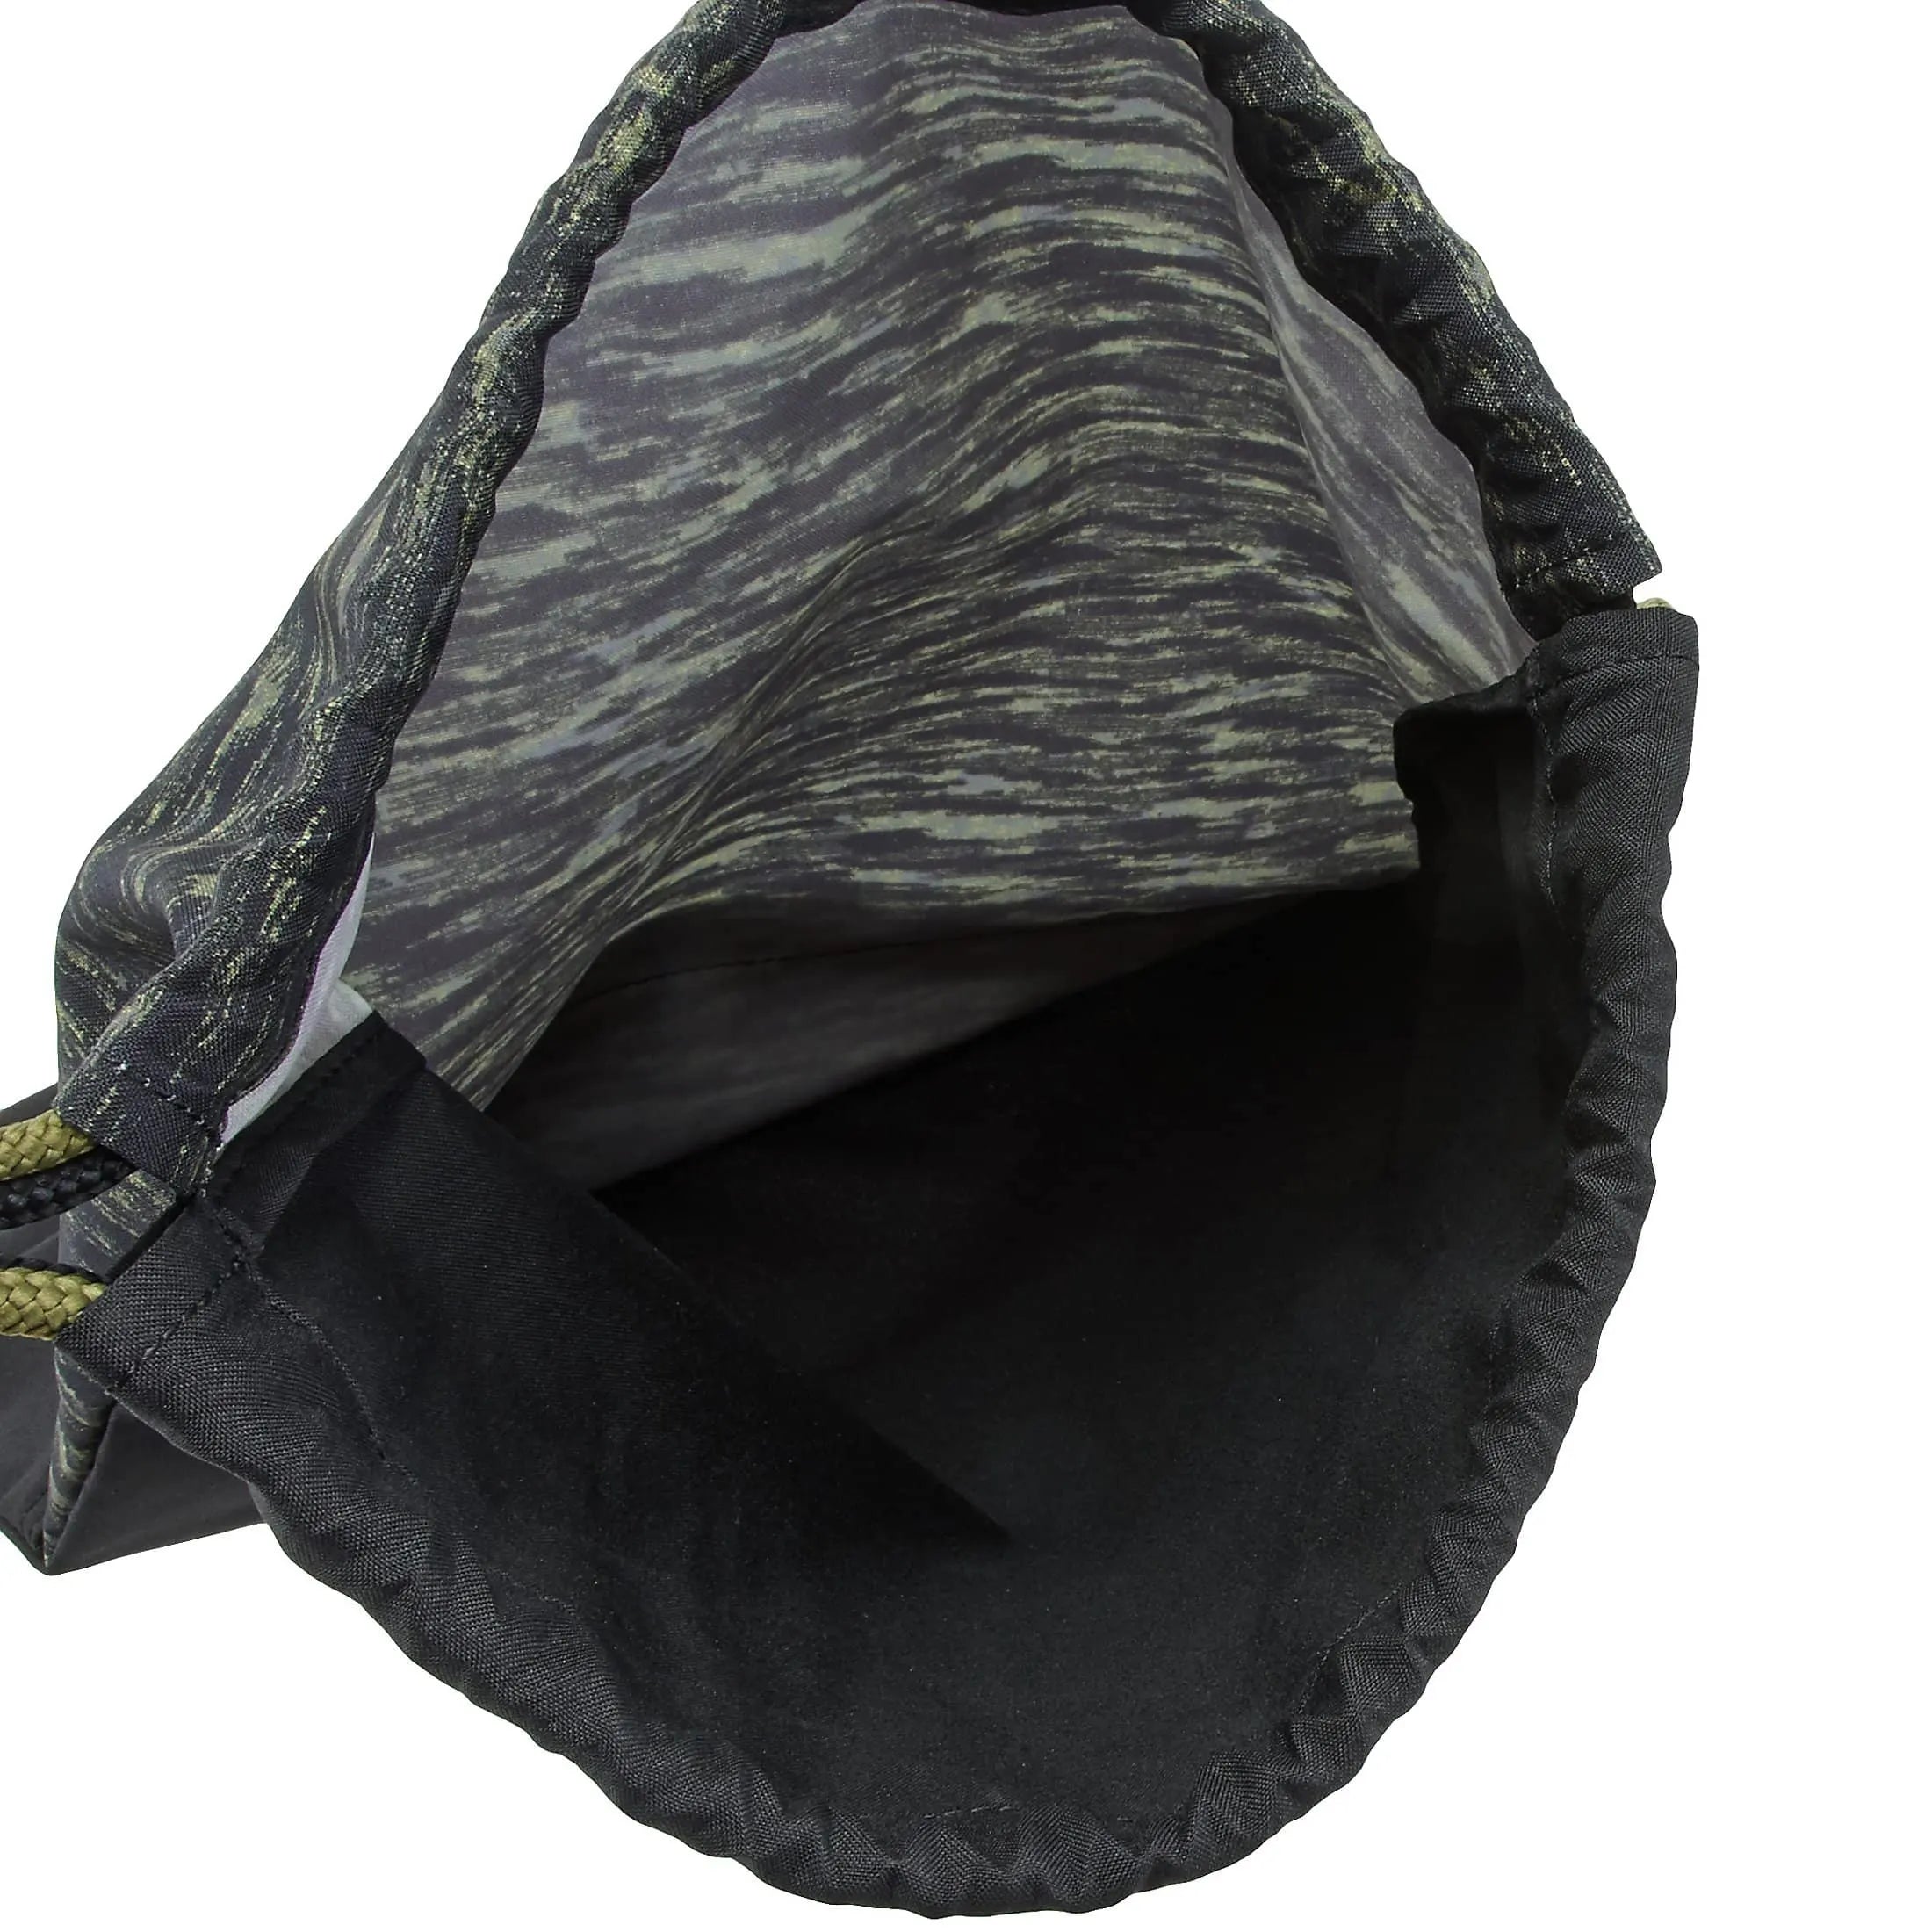 Puma Prime Gym Sack sports bag 44 cm - black avocado-velvet rope